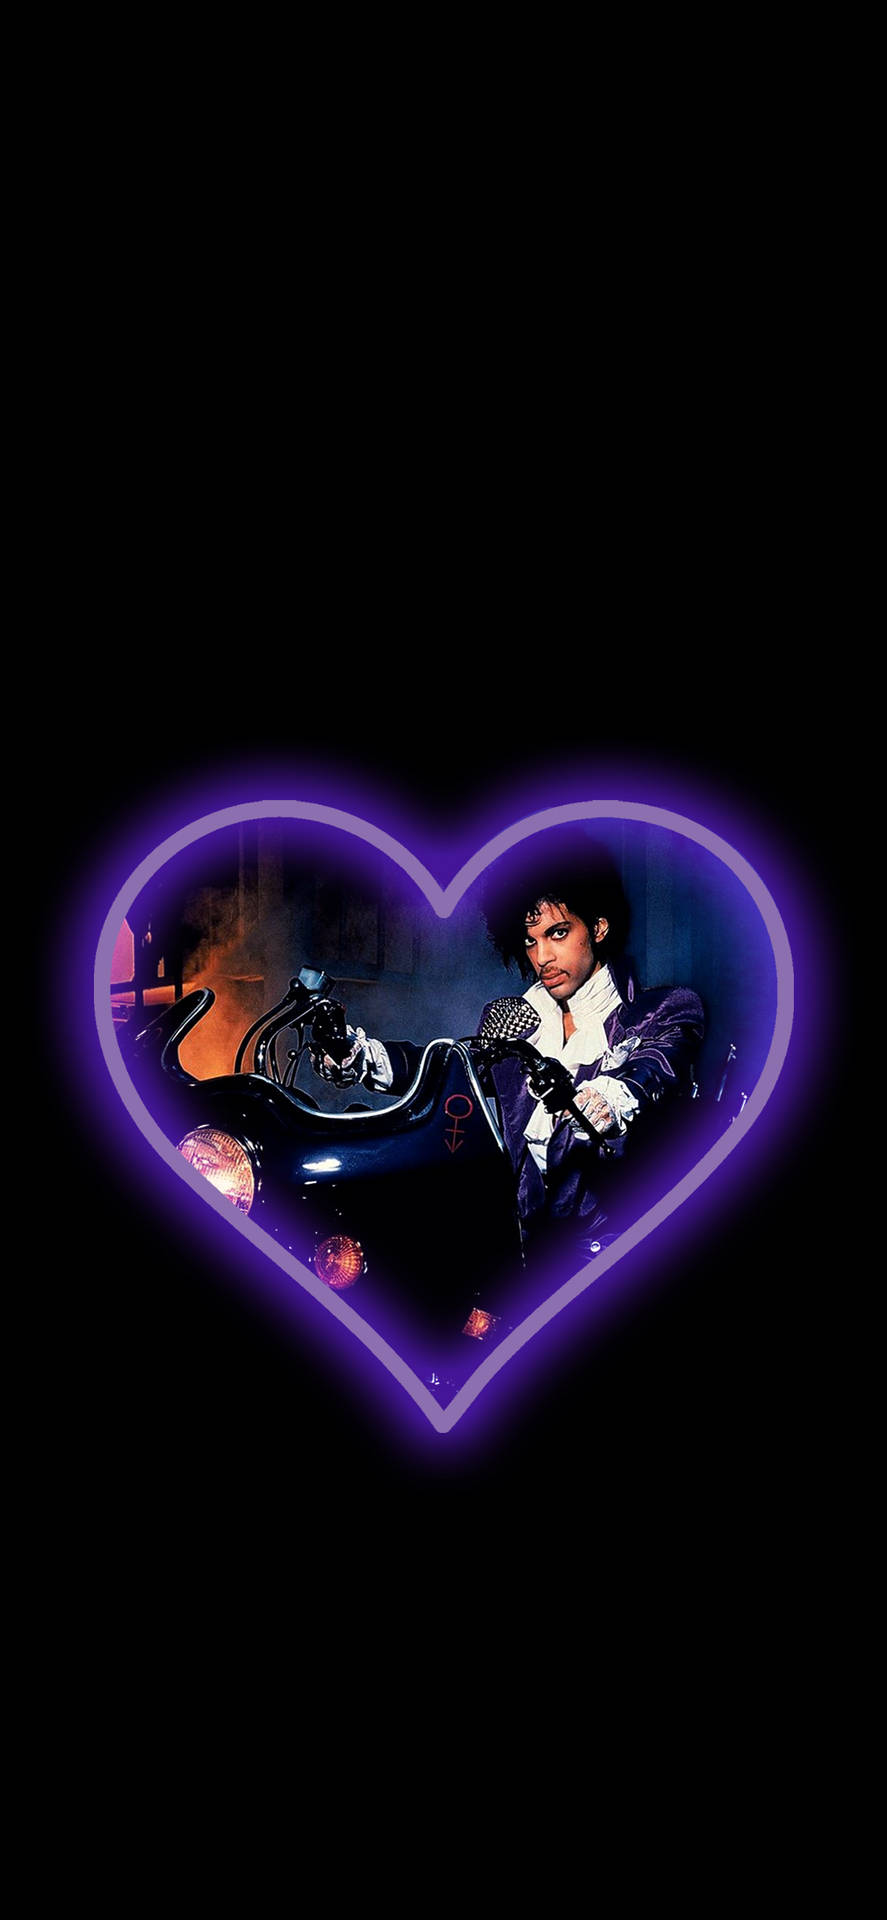 Prince Purple Heart Art Wallpaper